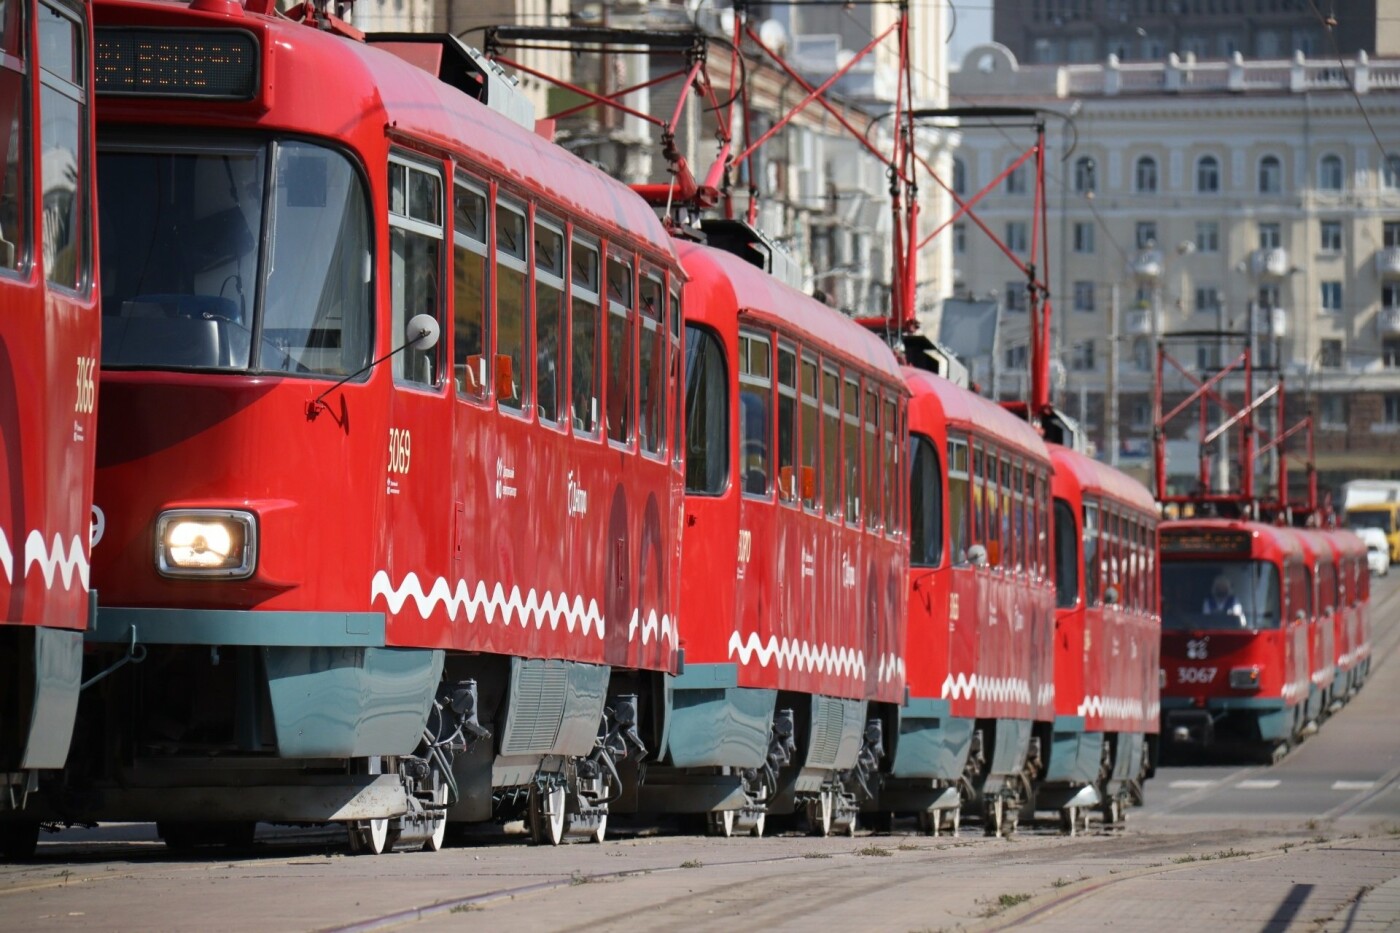 К услугам горожан: на новый маршрут Днепра привезли трамваи из Германии, - ФОТО, фото-2